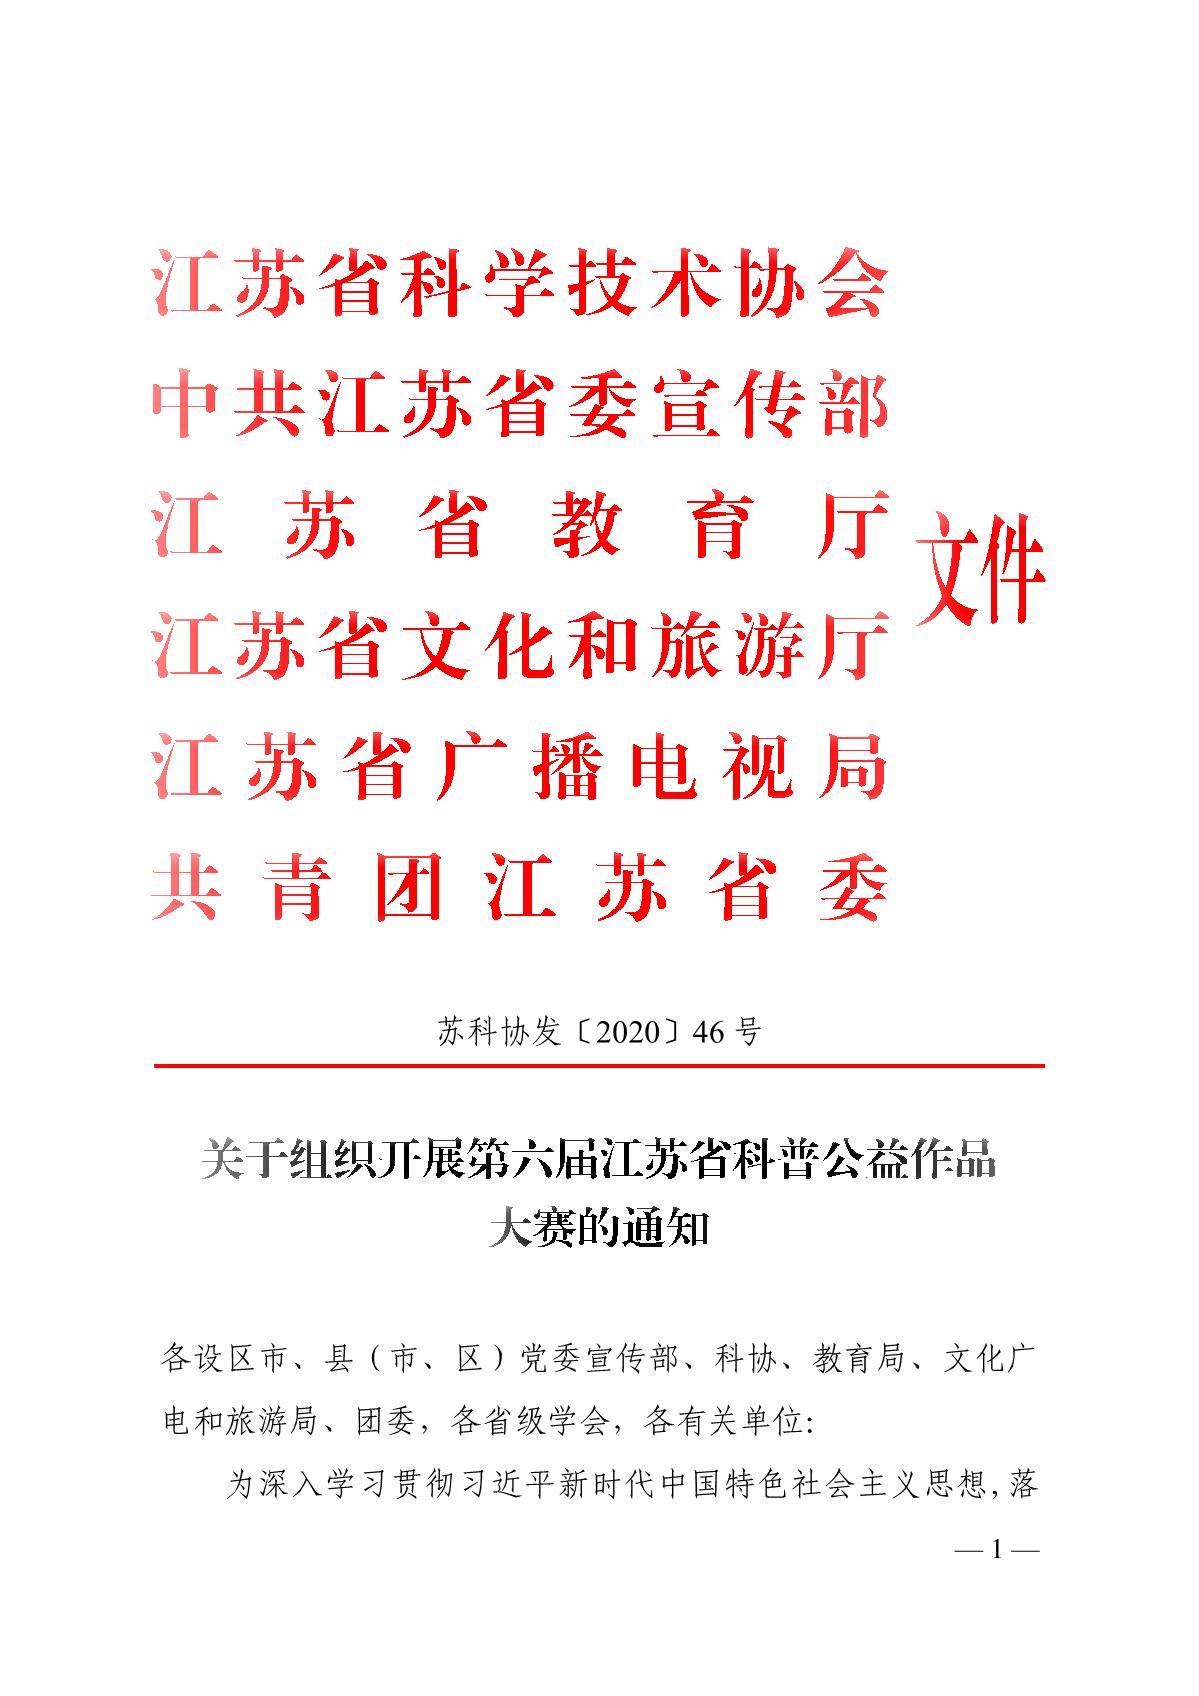 关于组织开展第六届江苏省科普公益作品大赛的通知（苏科协发〔2020〕46号）(1)_1.JPG